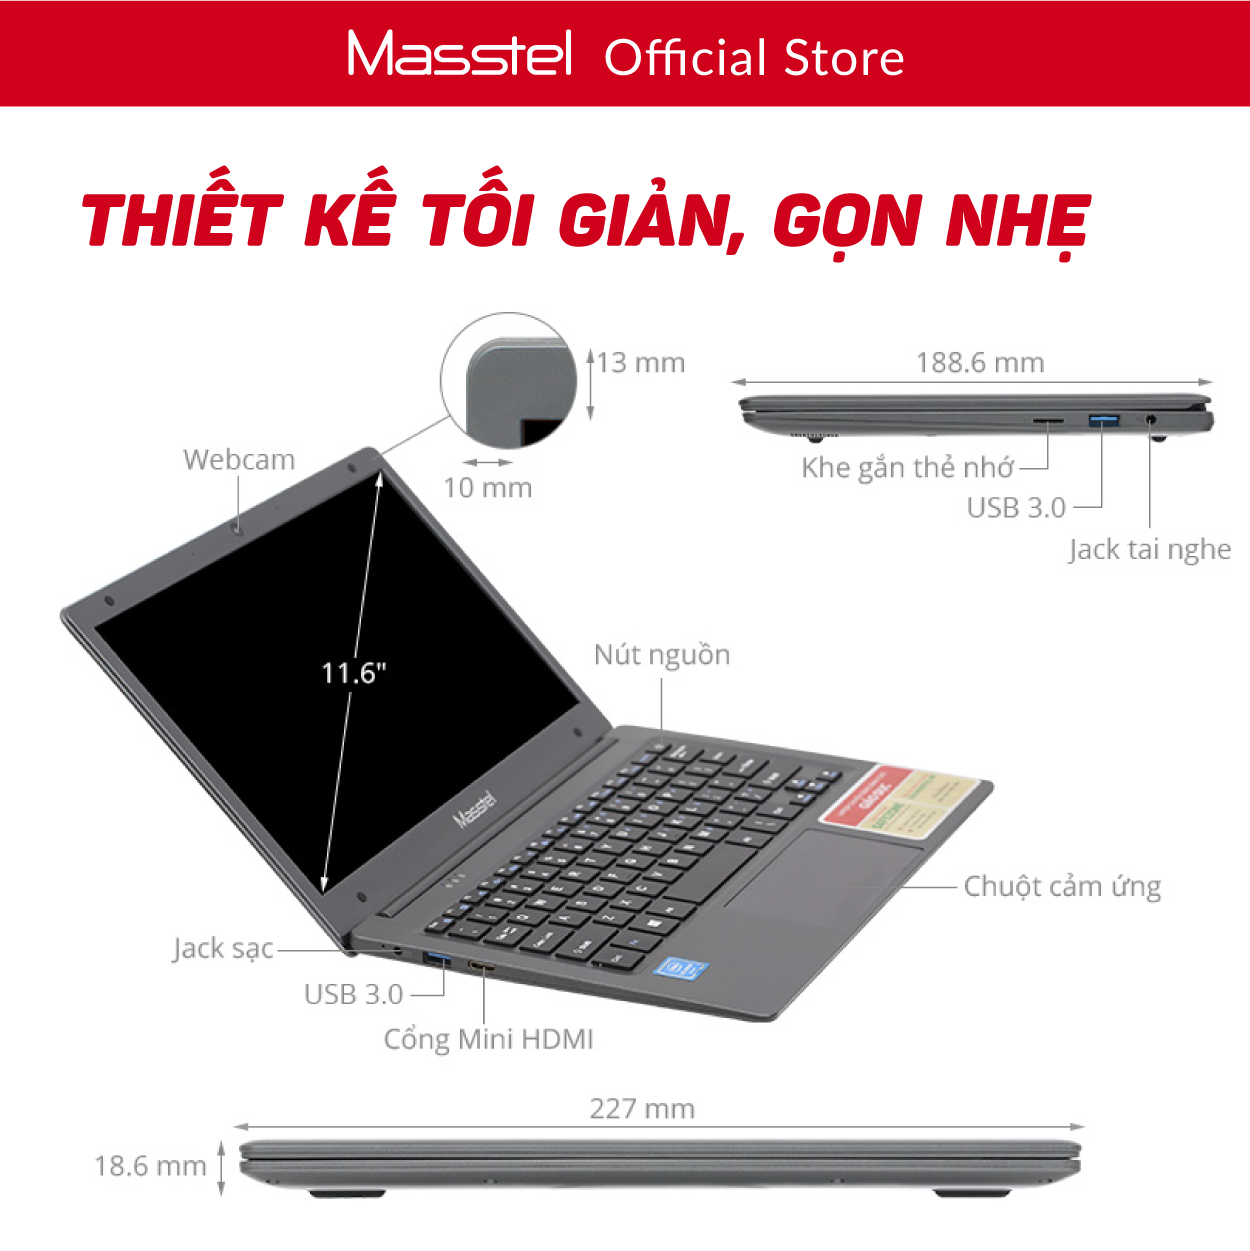 Hình ảnh Laptop Giáo dục Masstel E116 - Khoá học Toán - Tiếng Việt - Tiếng Anh từ lớp 1 đến lớp 5 - Bảo hành 12 tháng